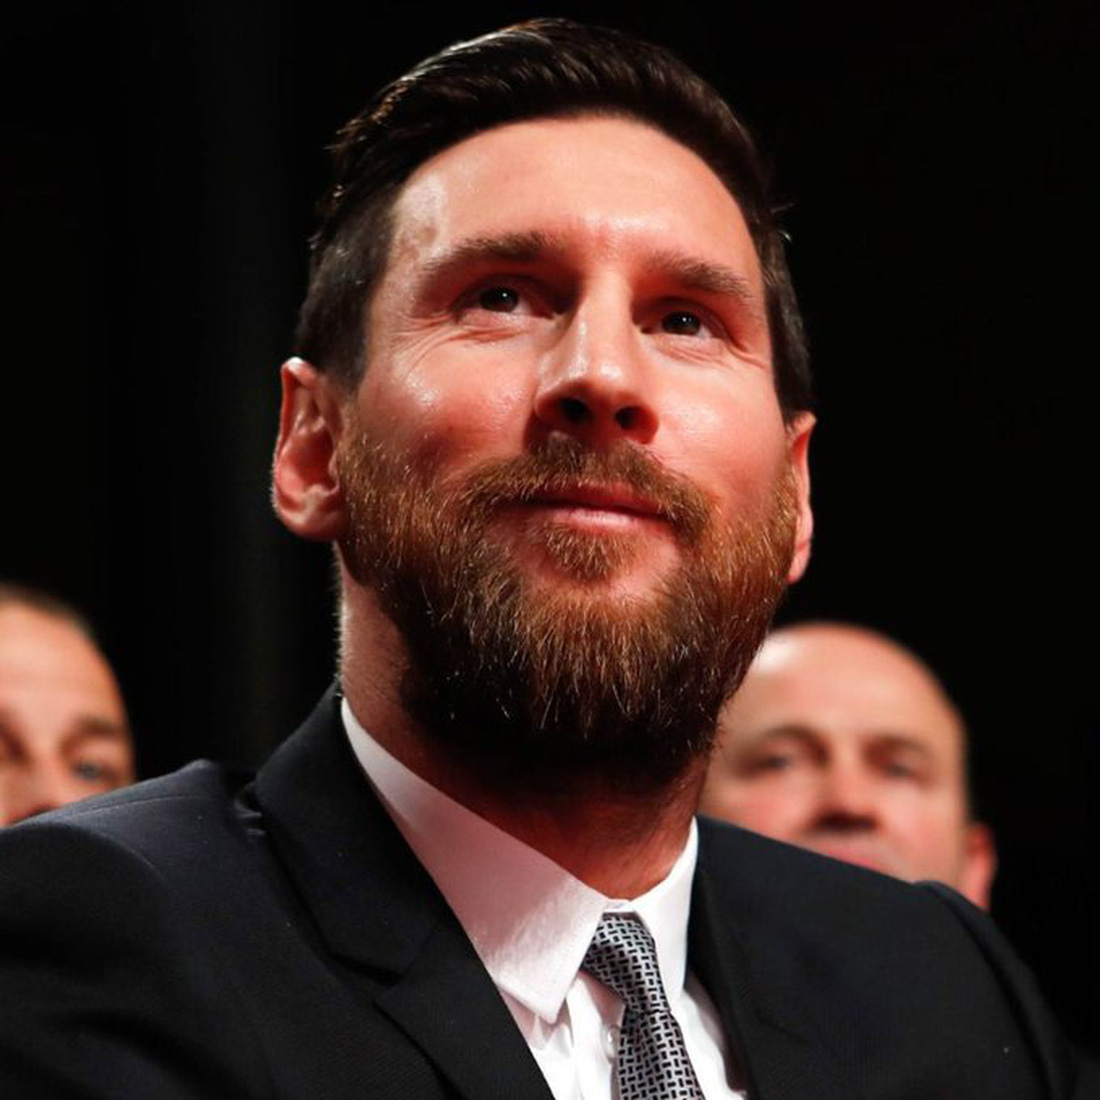 Messi khóc nhiều trong buổi họp báo chia tay Barca, chưa xác định bến đỗ mới - Ảnh 11.